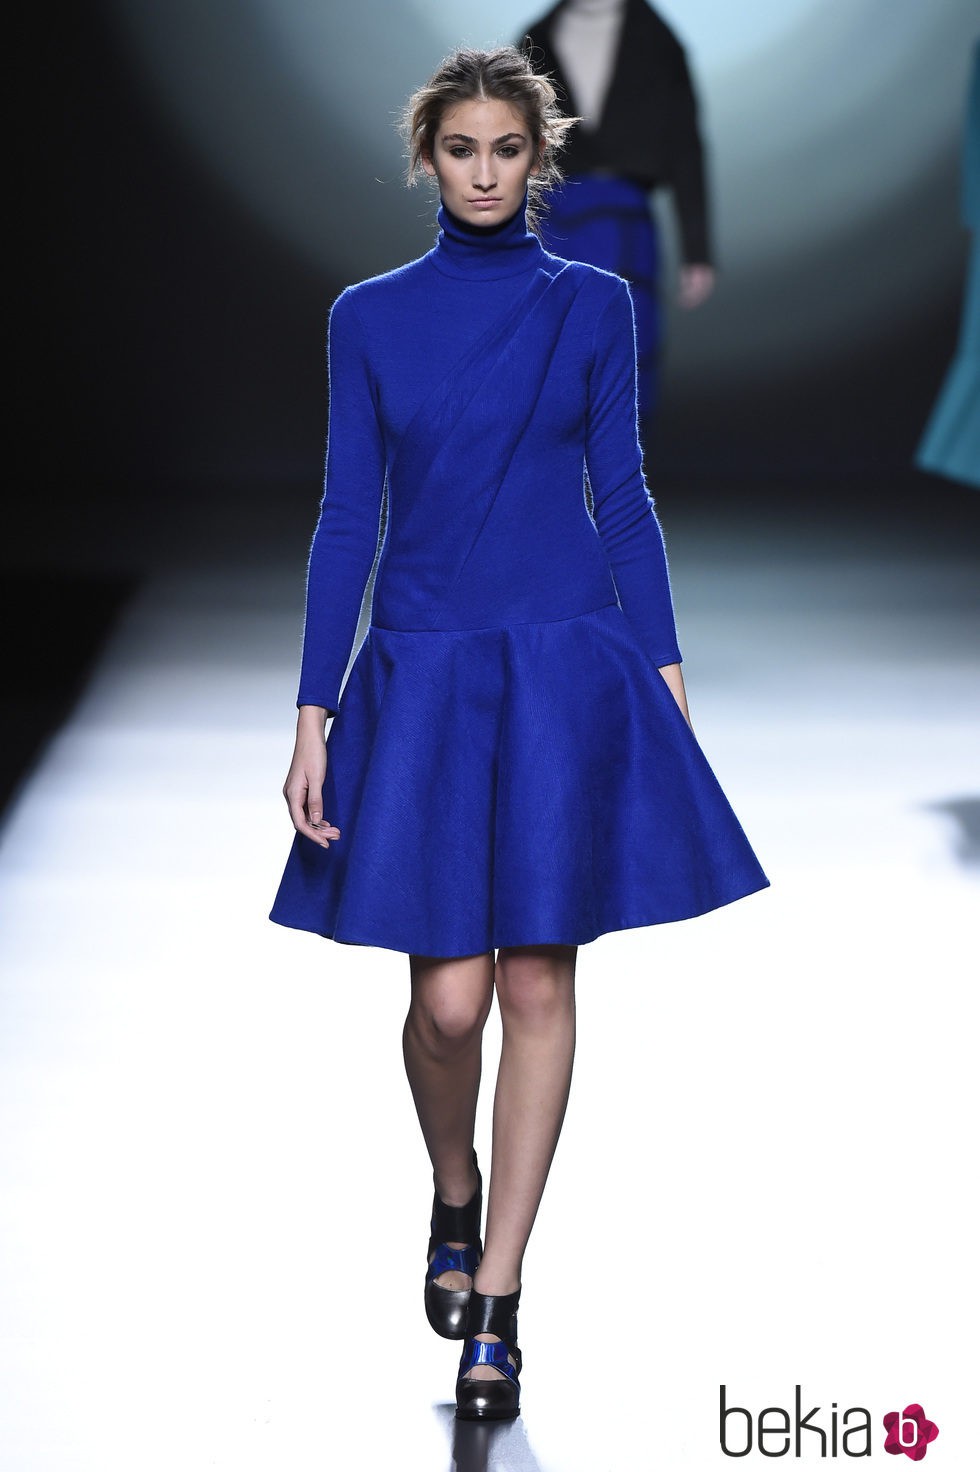 Vestido azul zafiro de la colección otoño/invierno 2015/2016 de Amaya Arzuaga en Madrid Fashion Week